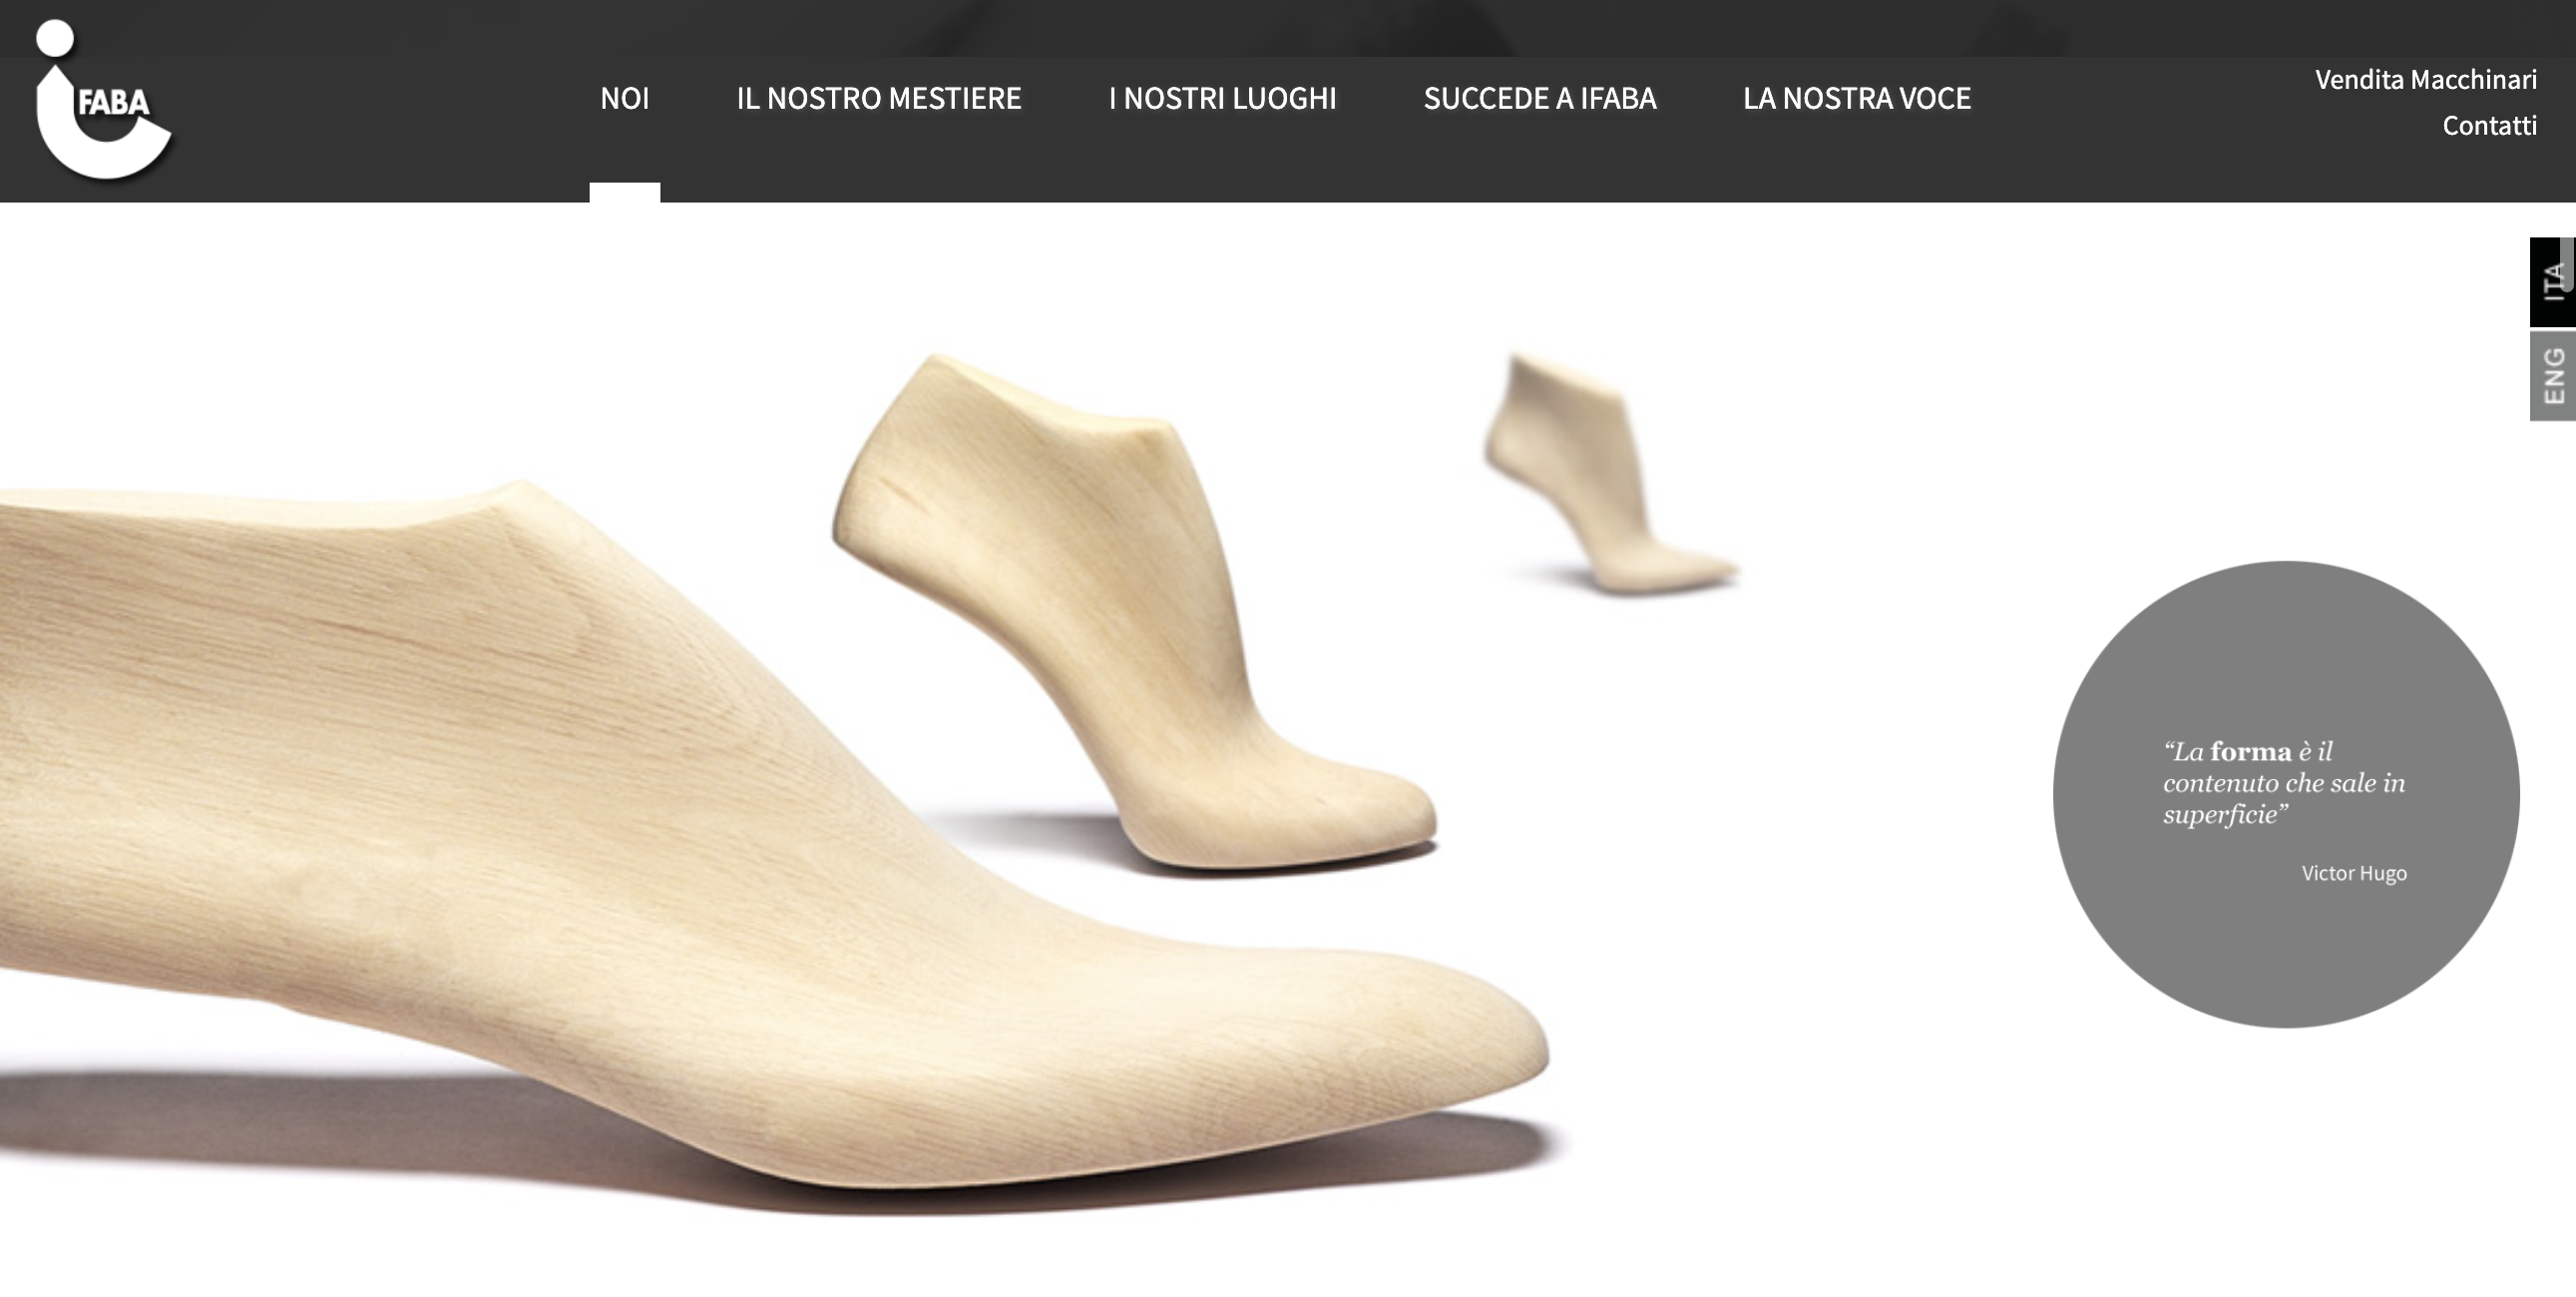 意大利鞋楦生产商 Ifaba 收购可持续塑料产品加工商 Camont 的少数股权